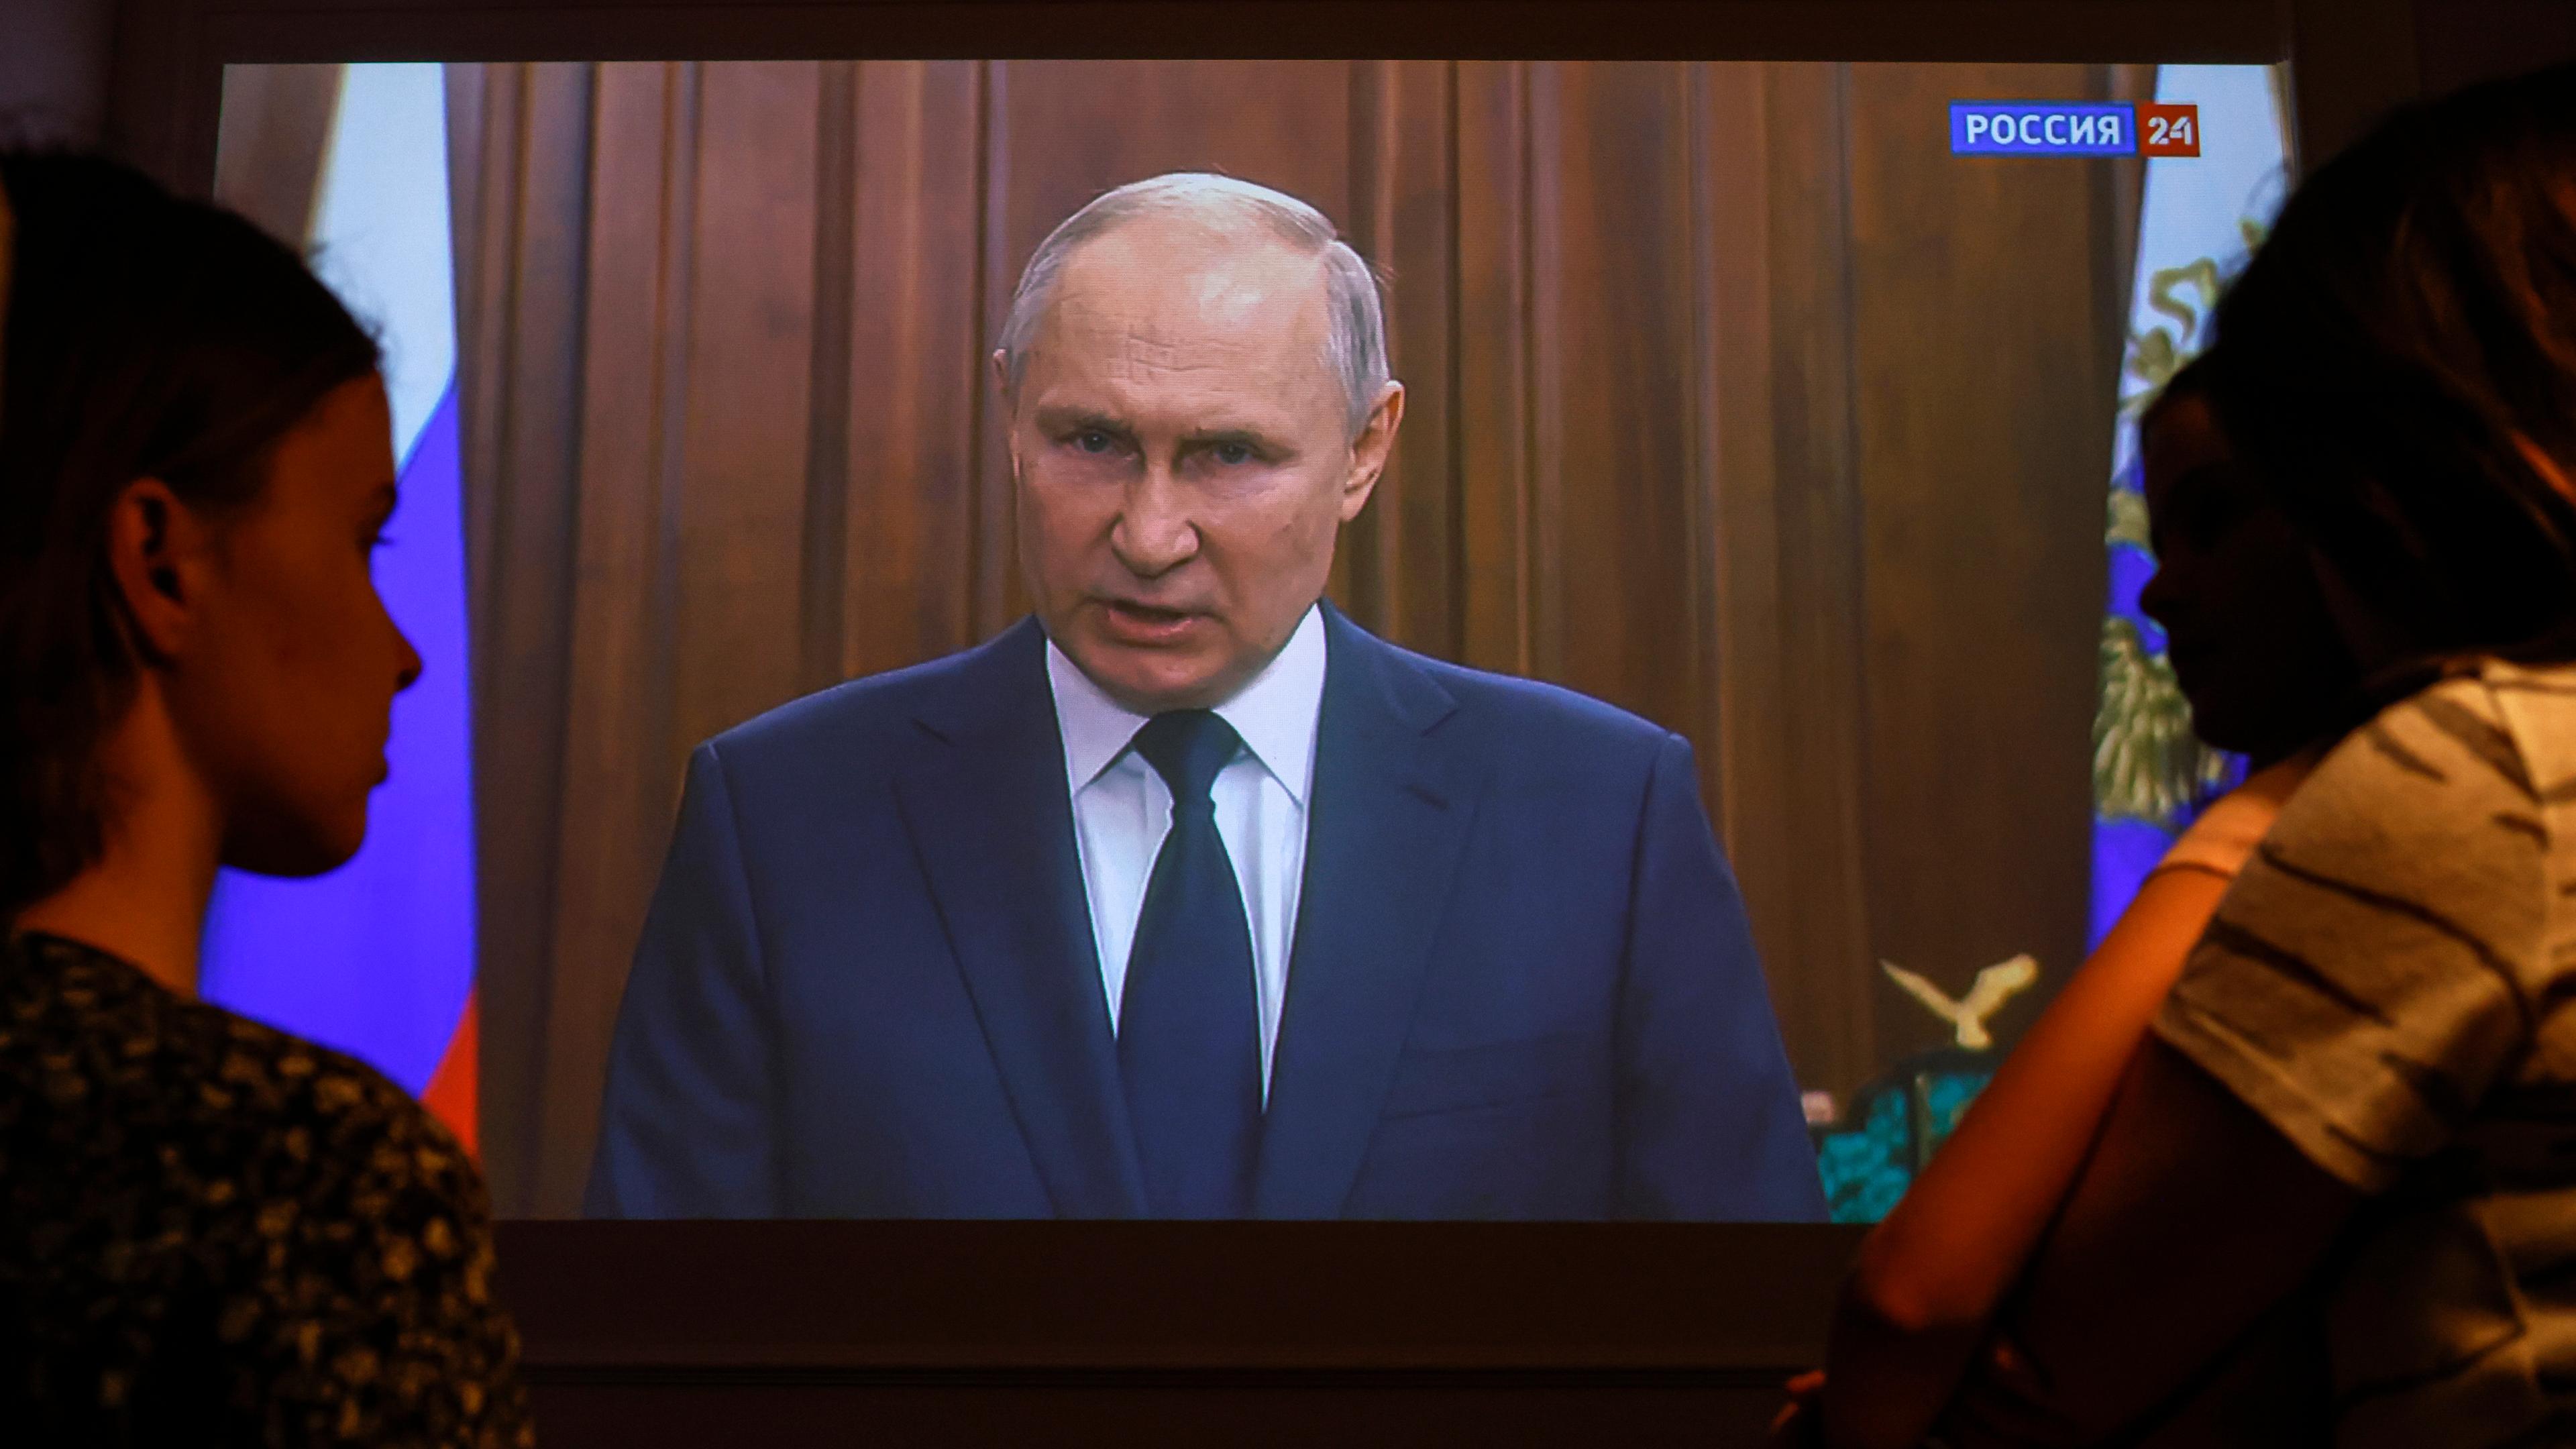 Russlands Präsident Putin spricht im Fernsehen, Menschen schauen zu